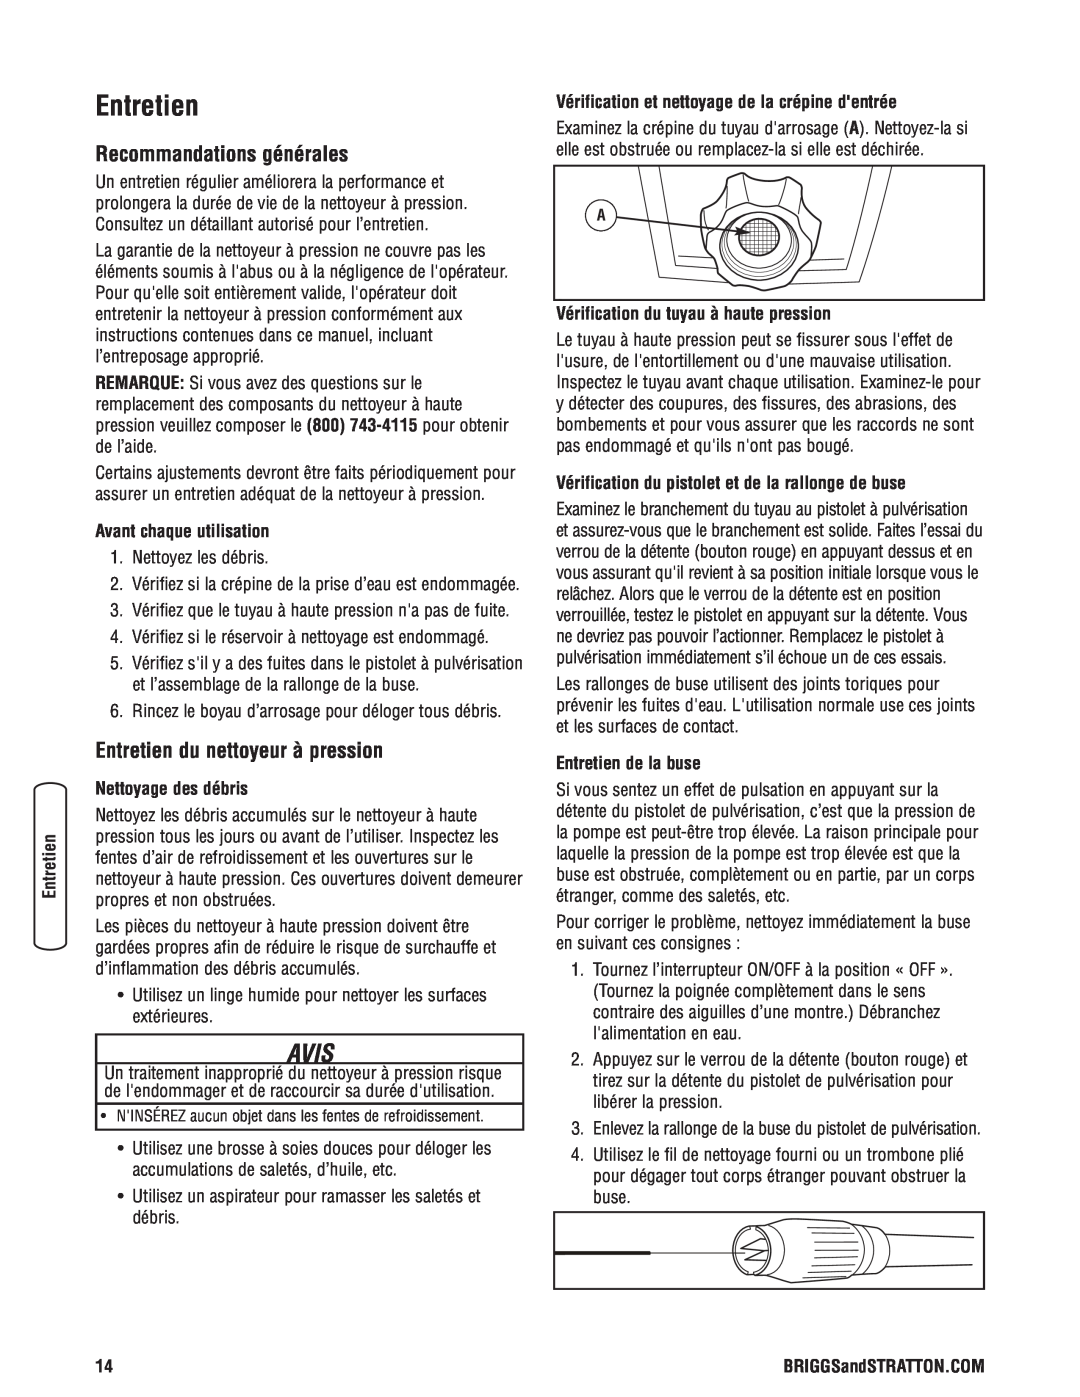 Briggs & Stratton Electric Pressure Washer manual Recommandations générales, Entretien du nettoyeur à pression, Avis 